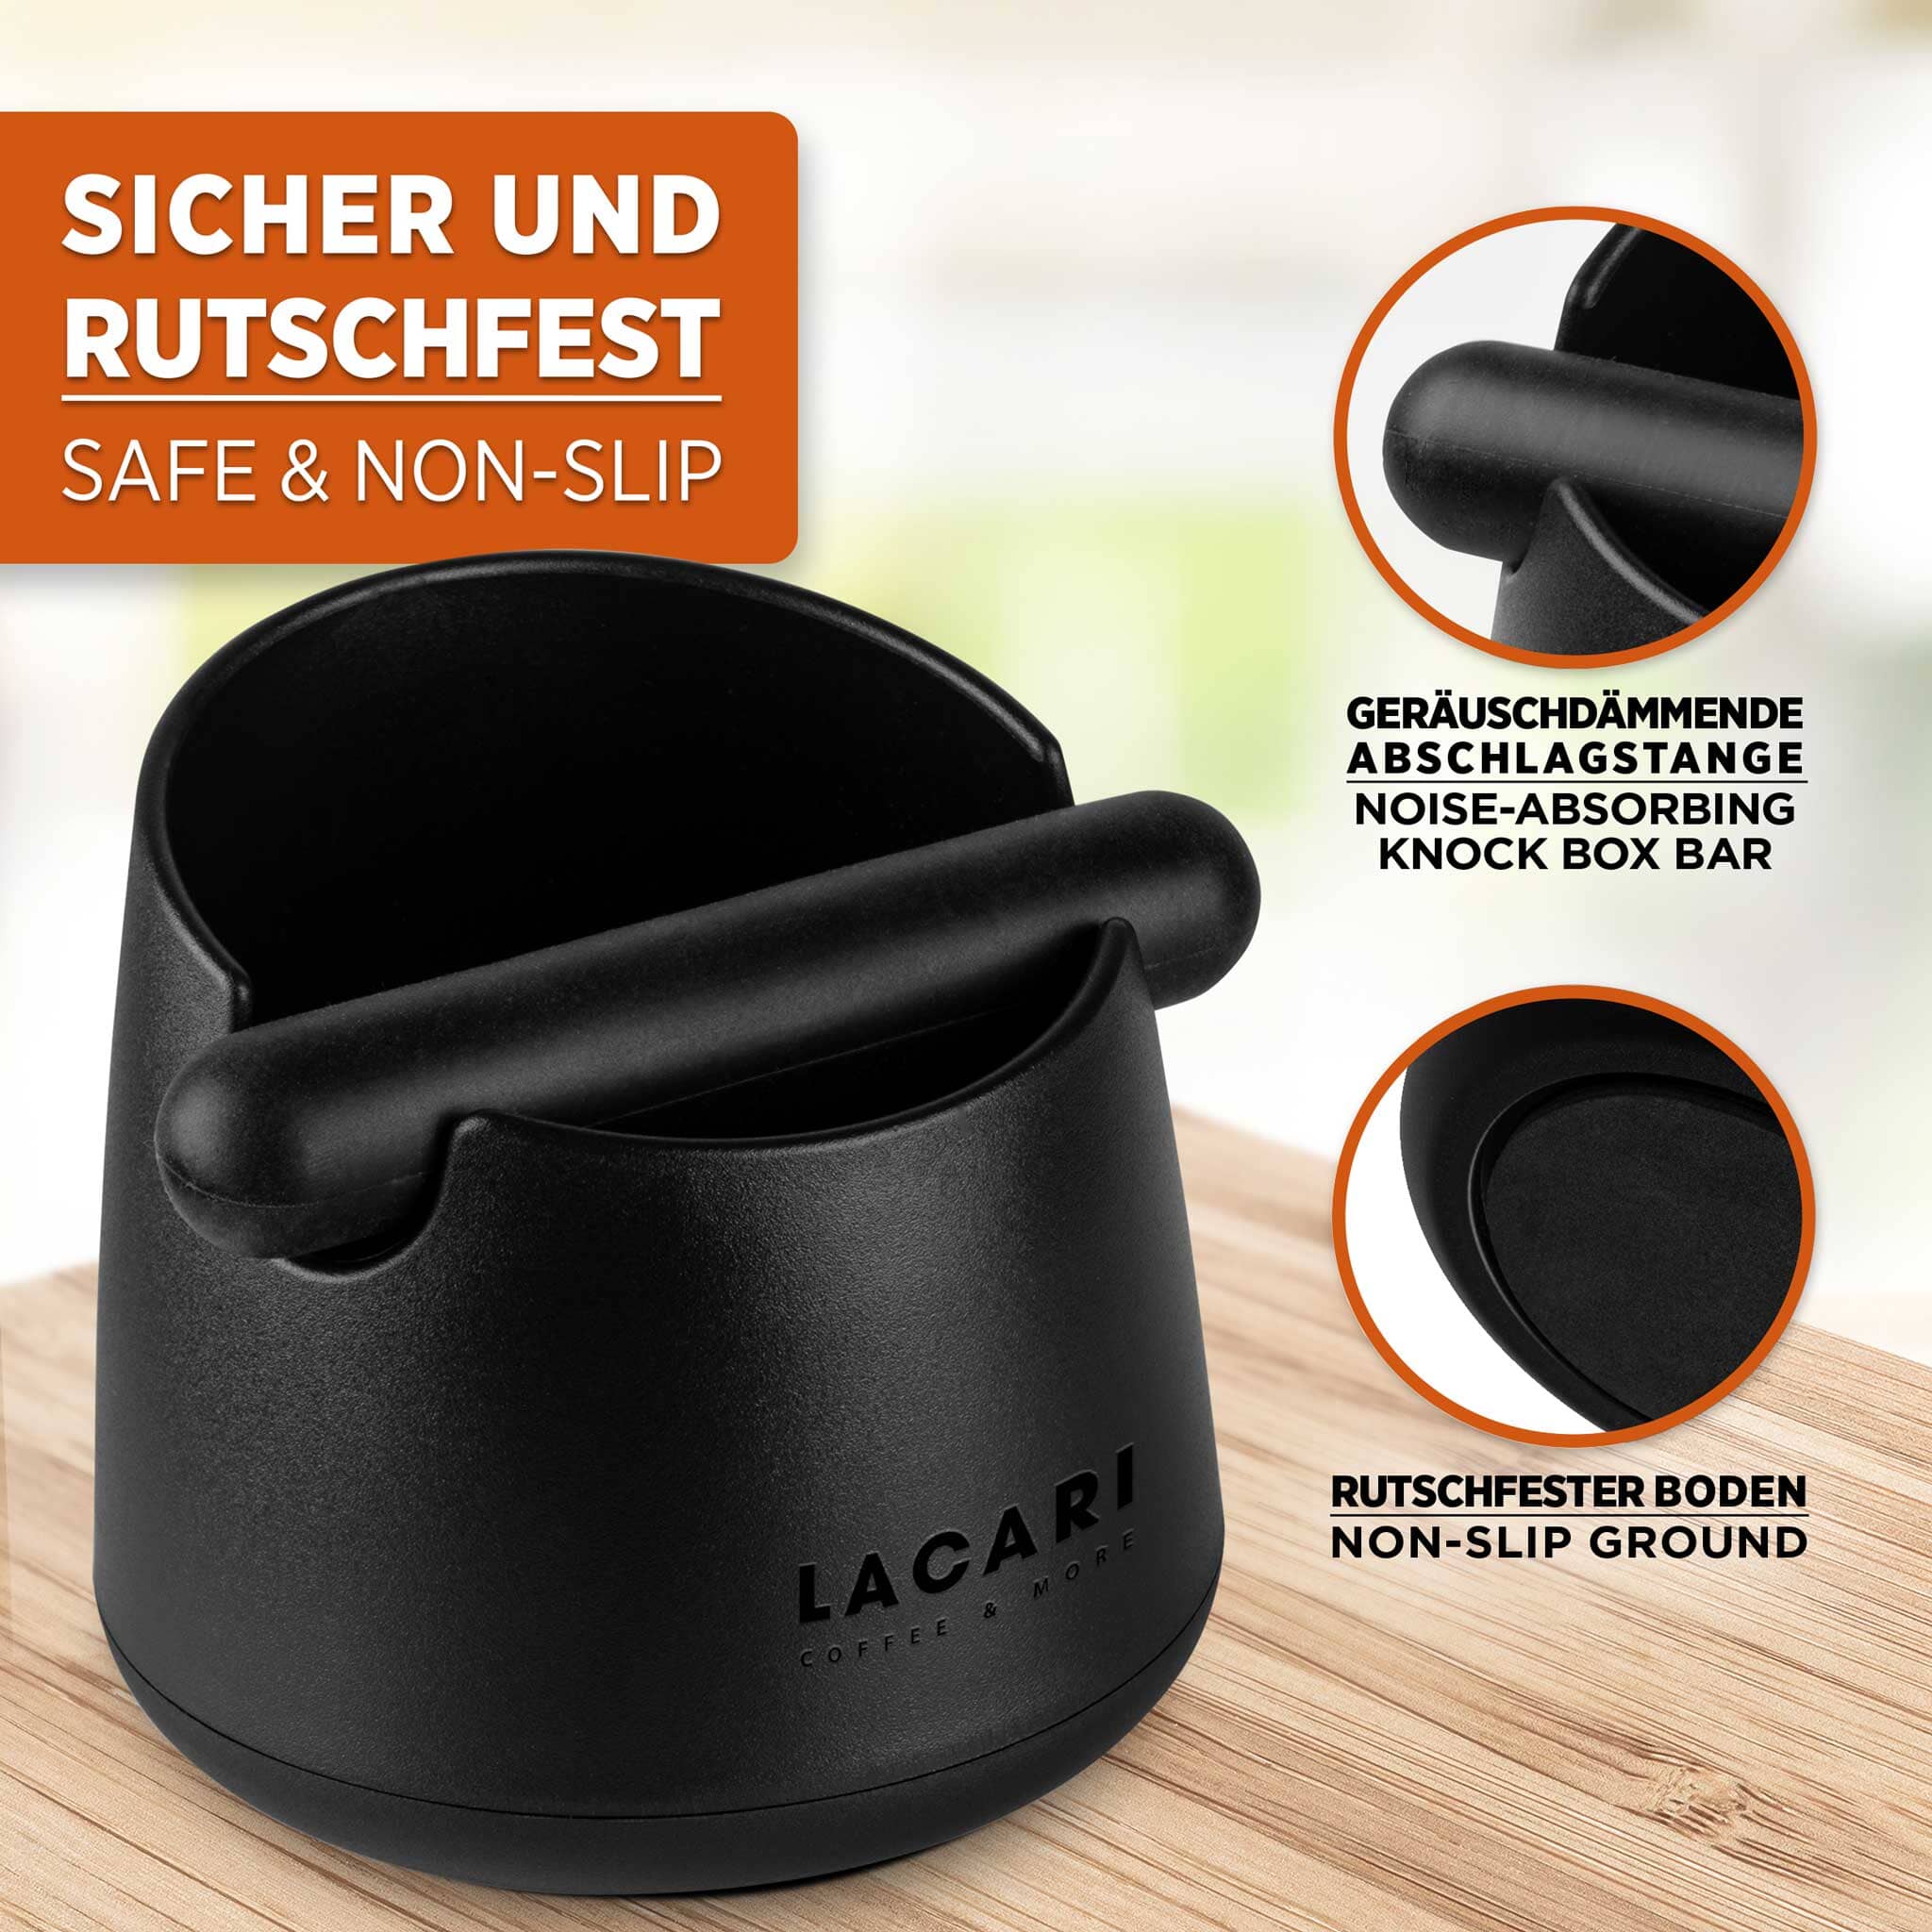 LACARI Abklopfbehälter - Der perfekte Espresso-Genuss aus recyclebarem Kunststoff Zubehör für Kaffee- & Espressomaschinen Lacari 